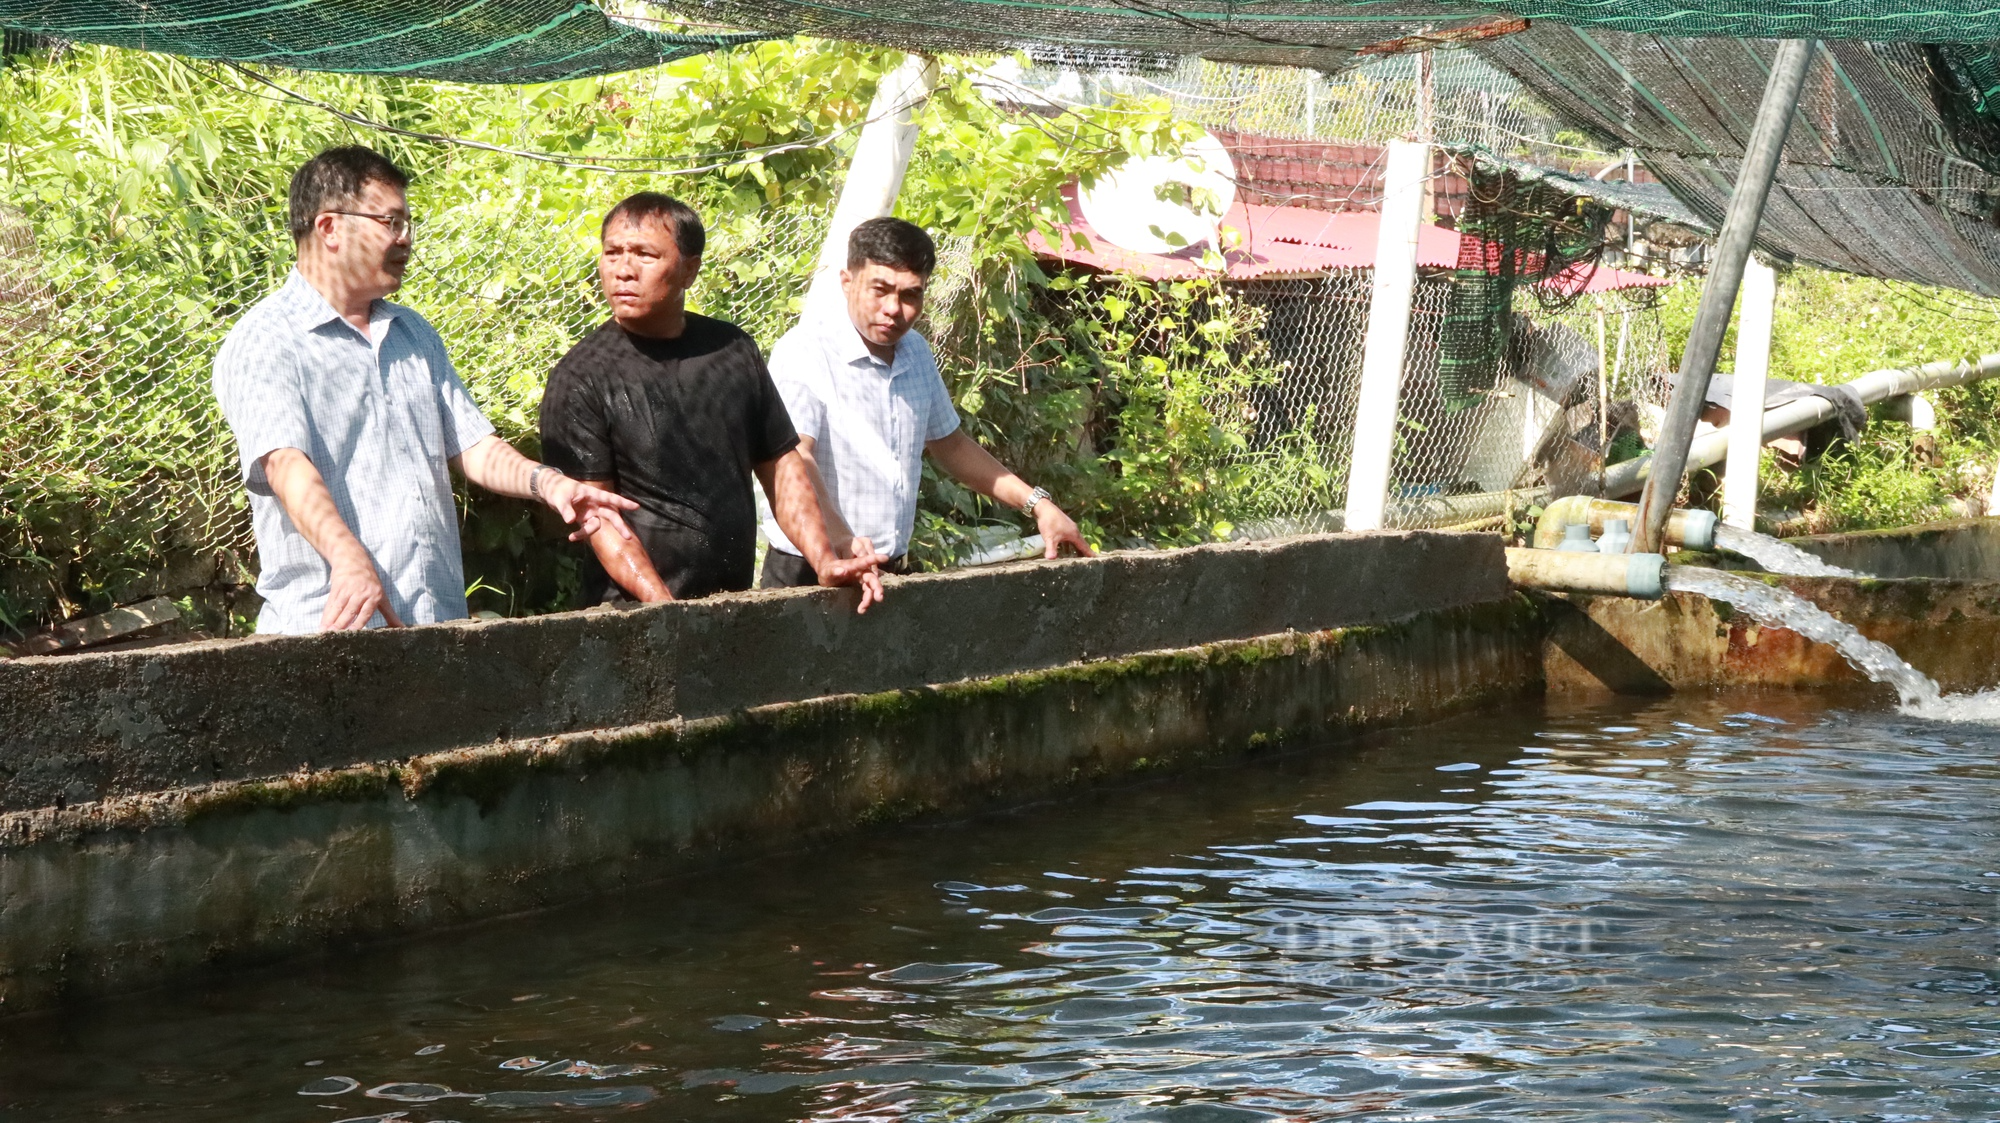 Cận cảnh trang trại nuôi cá tầm mang lại doanh thu 5 tỷ đồng tại Lâm Đồng - Ảnh 3.